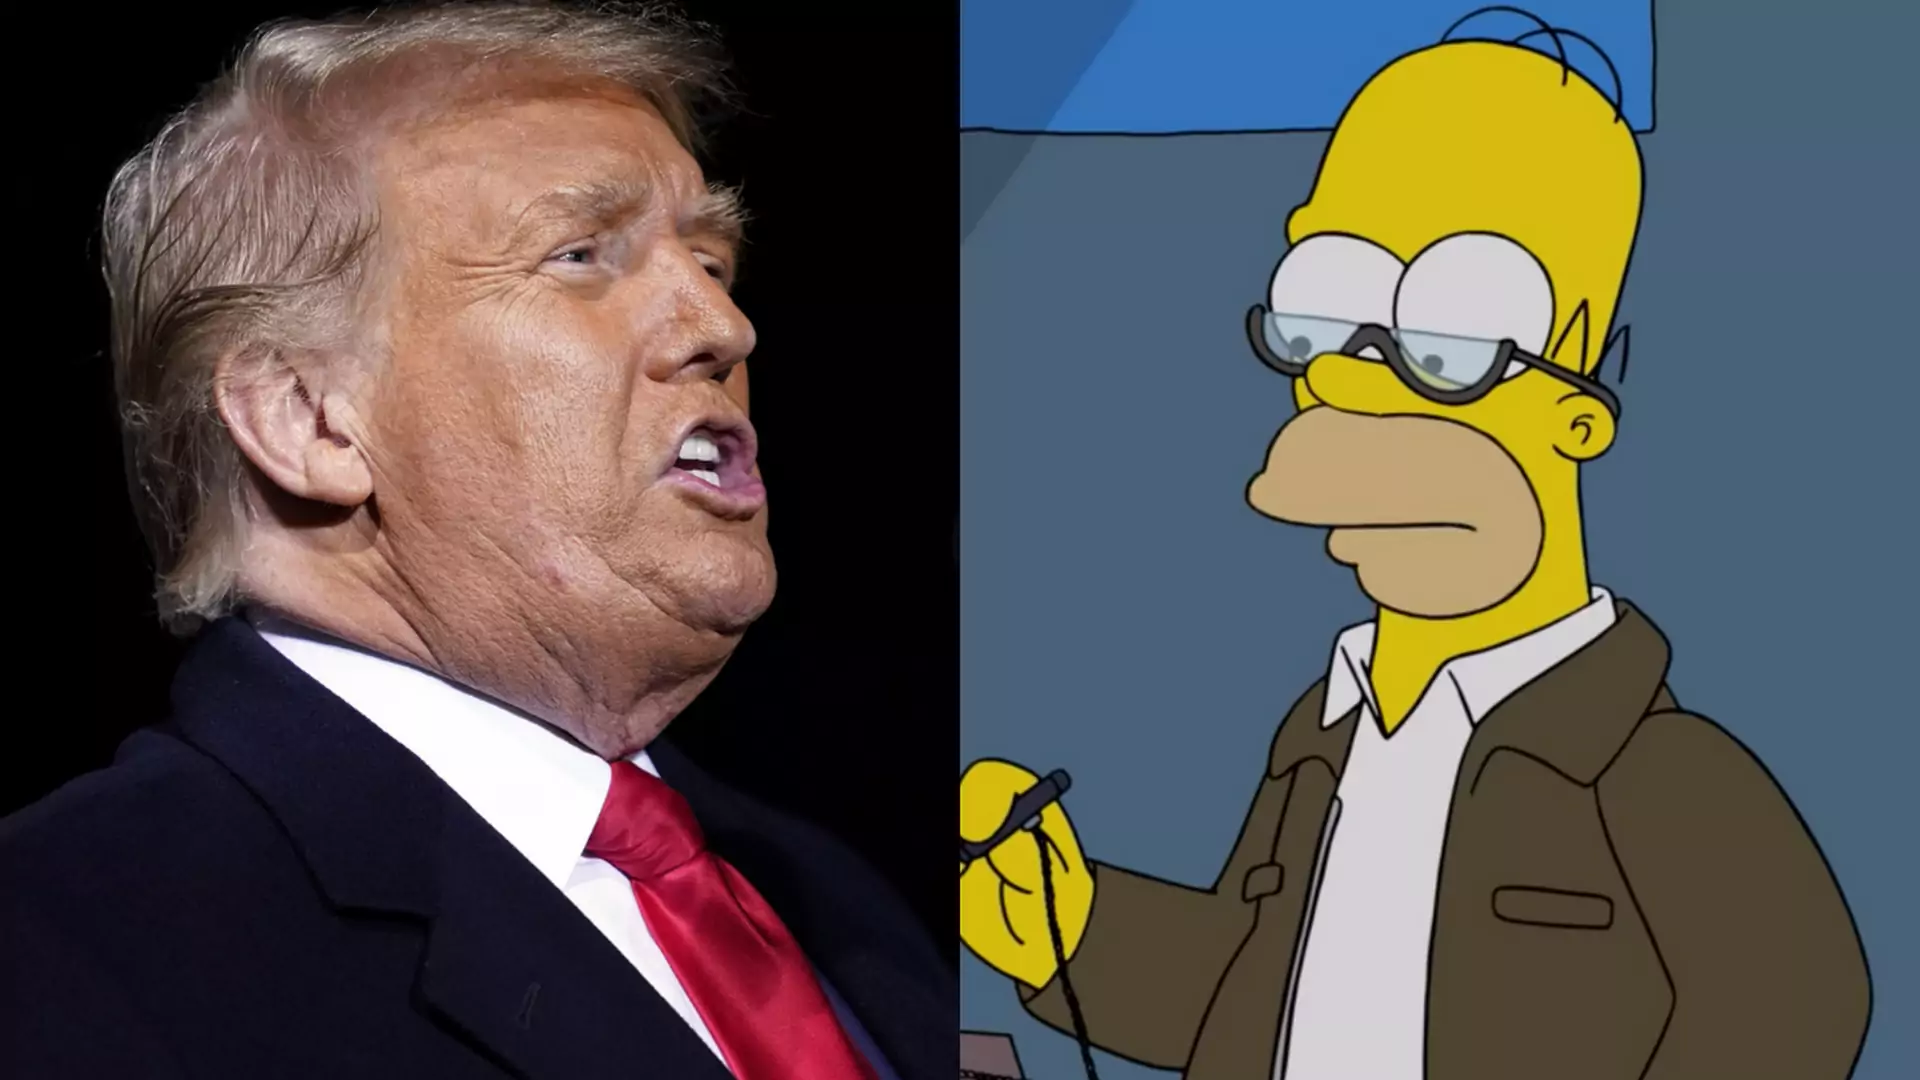 "Zamykał dzieci w klatkach". Twórcy Simpsonów znaleźli 50 powodów, dla których Trump nie powinien wygrać wyborów